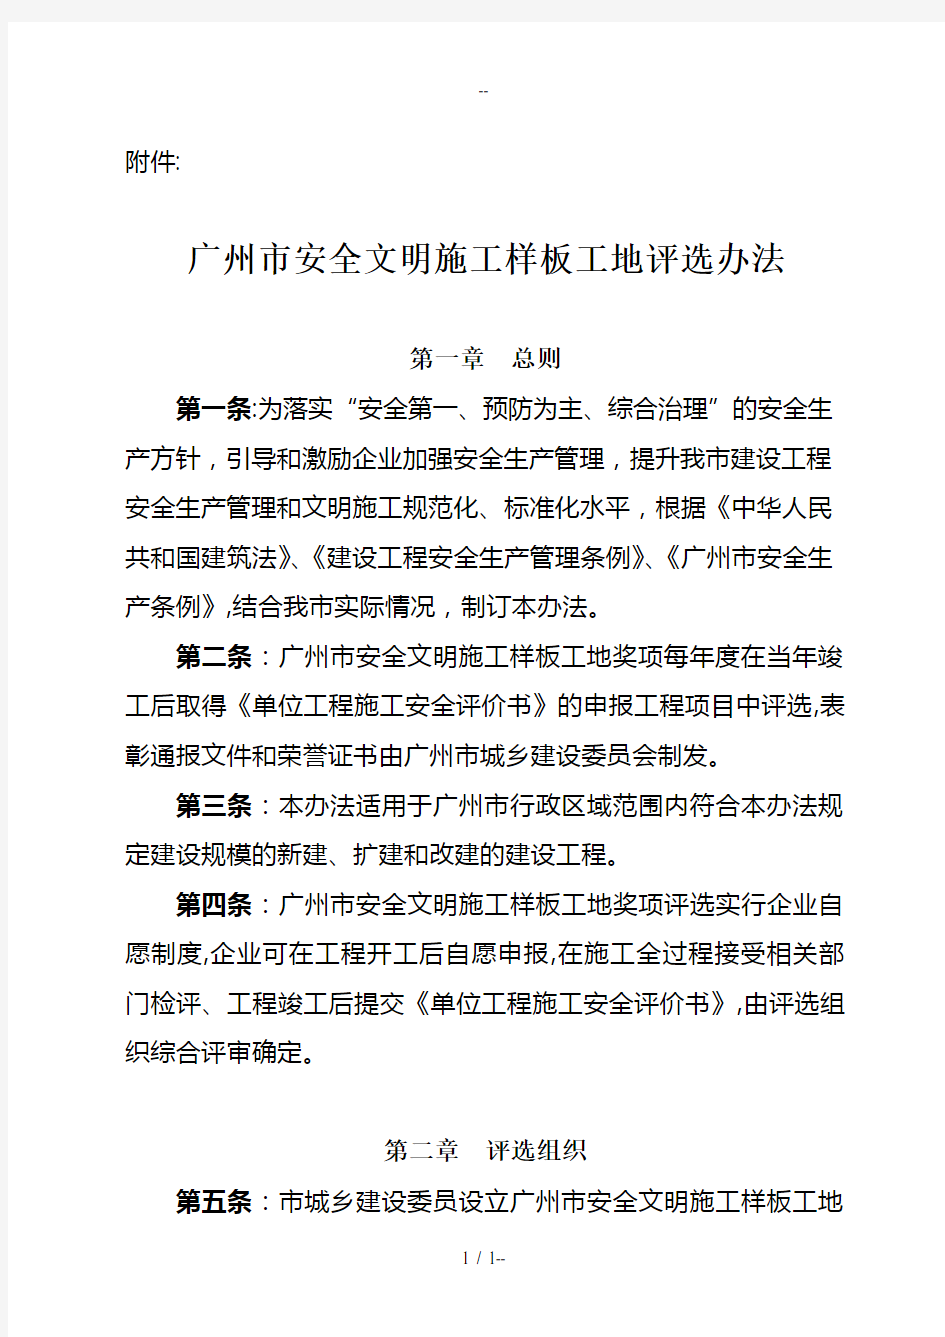 广州市安全文明施工样板工地评选办法